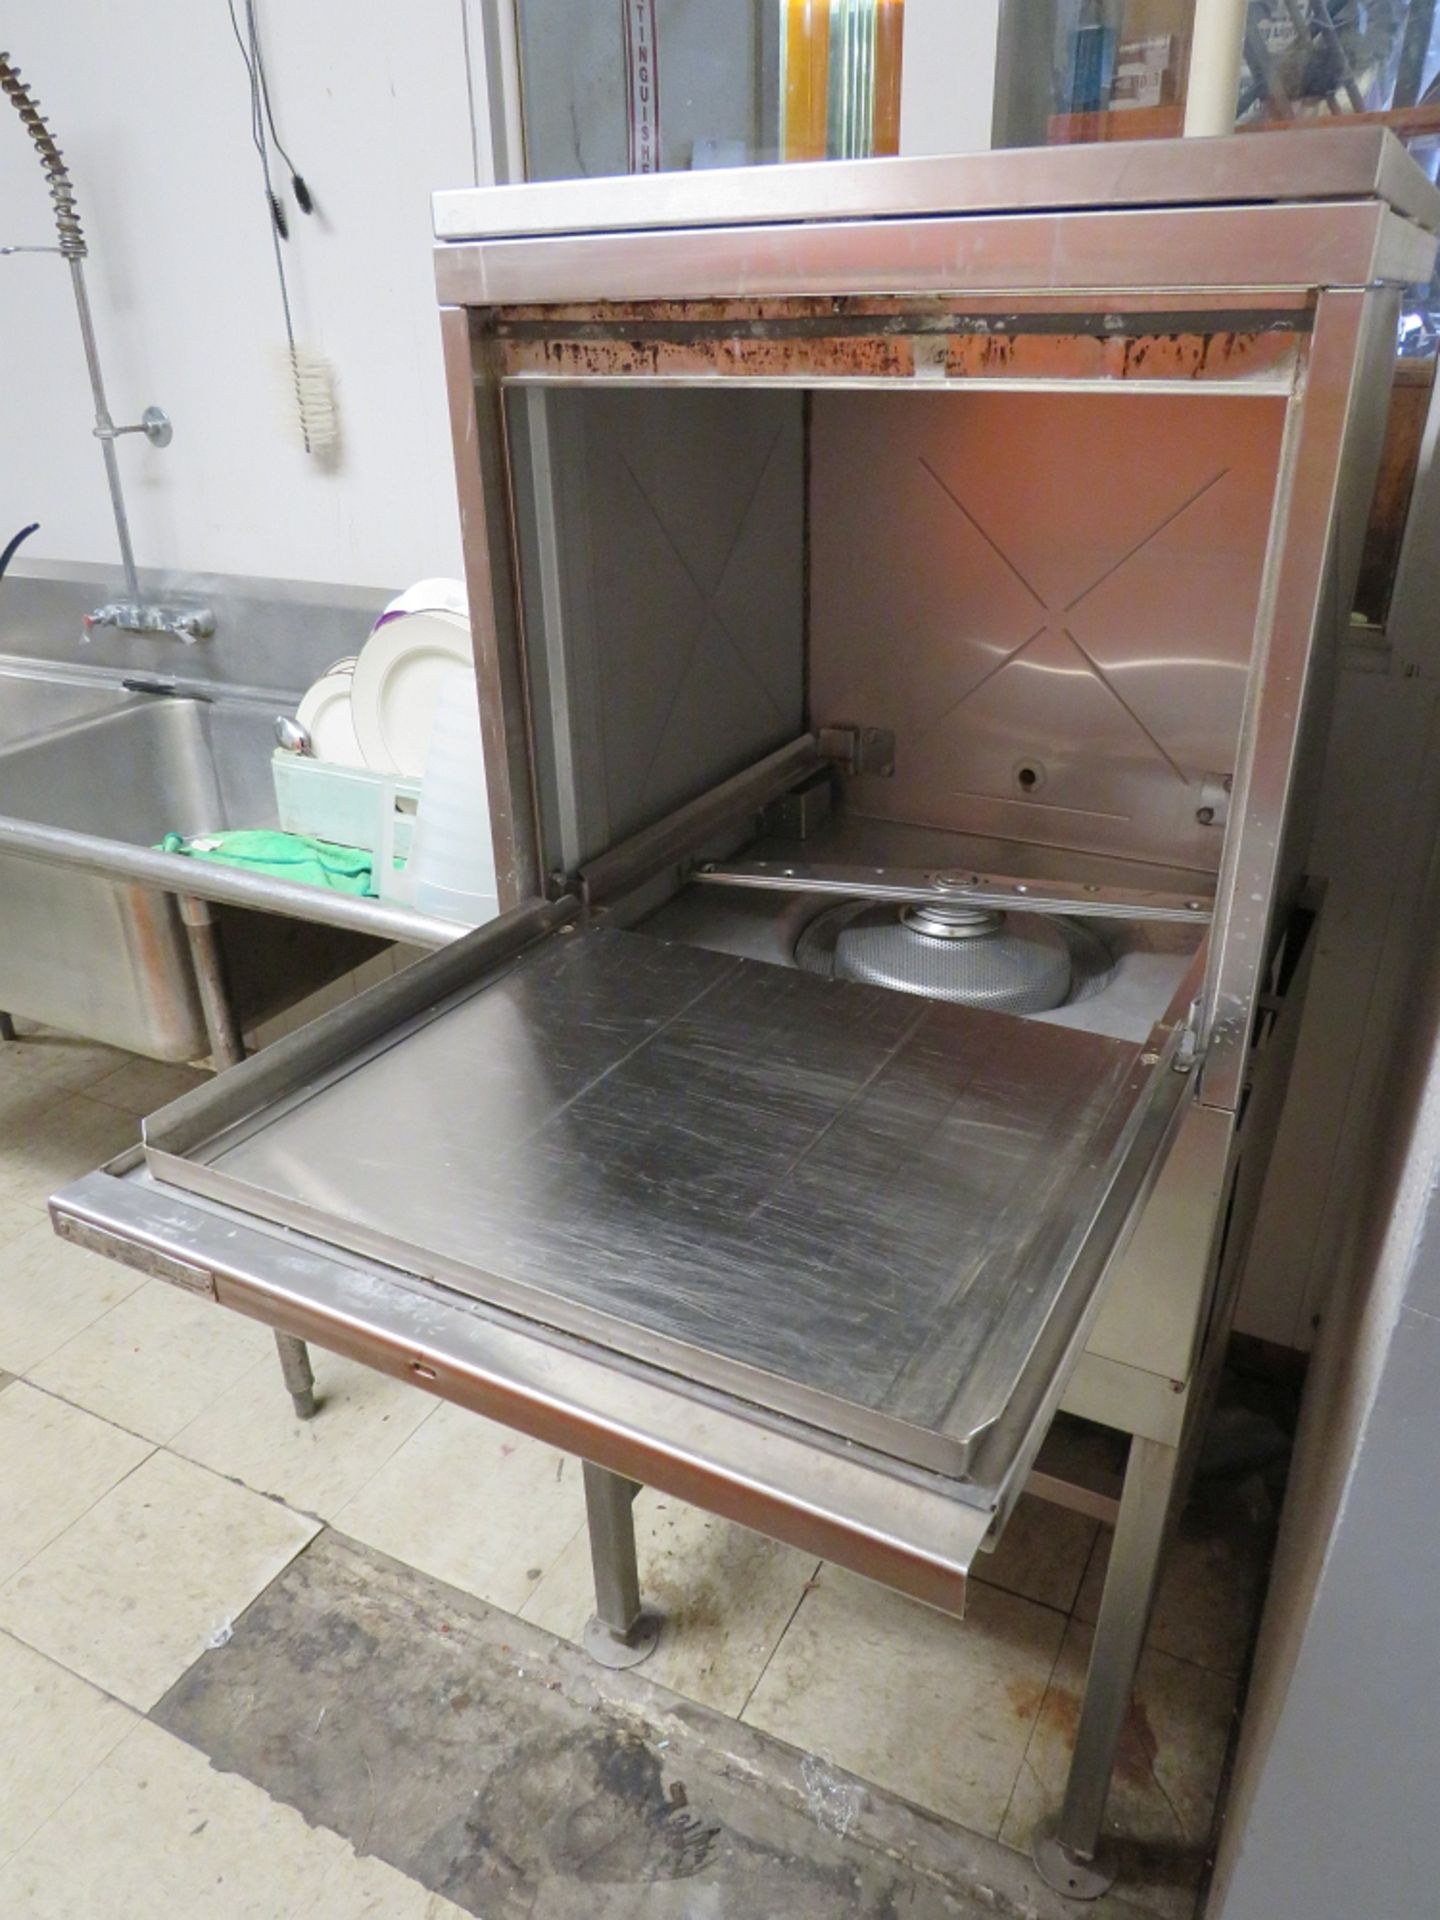 Hobart Commercial Dishwasher, Mdl WN5H - Image 2 of 2